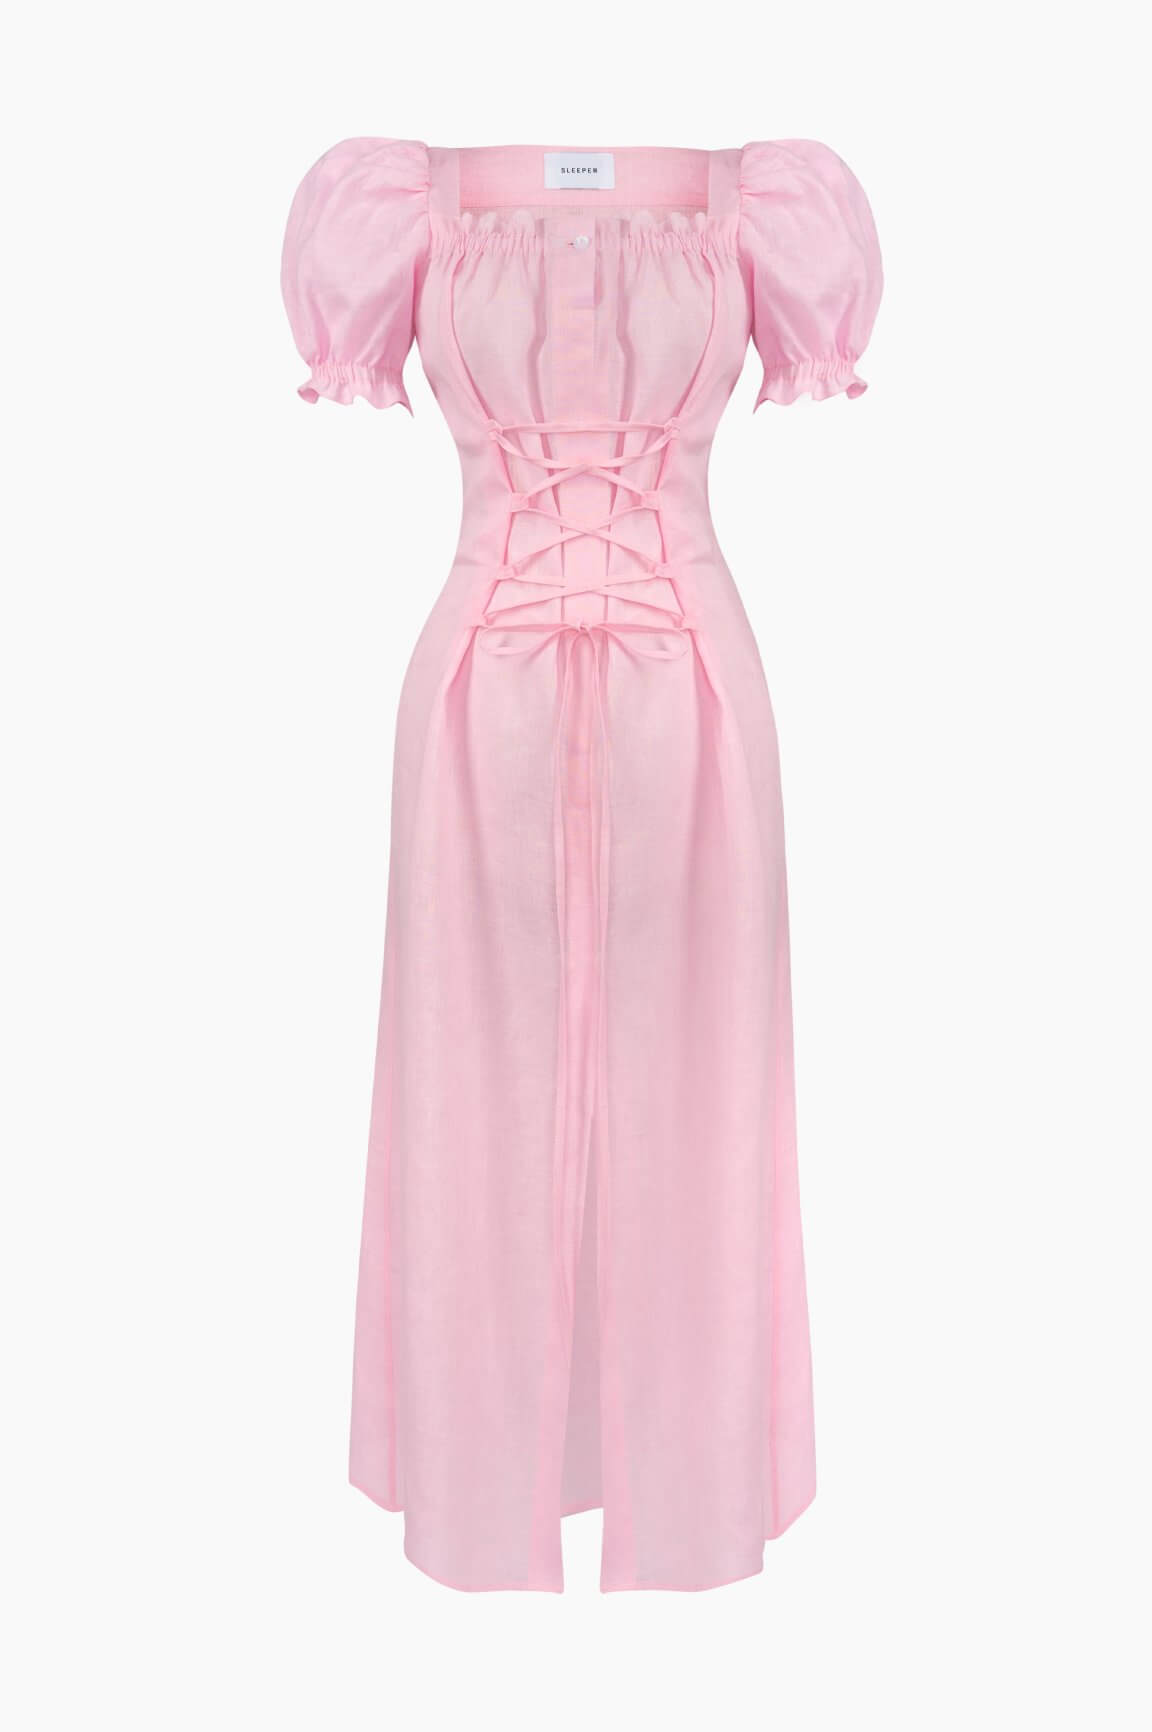 Pink linen dress | Summer linen dress by Sleeper